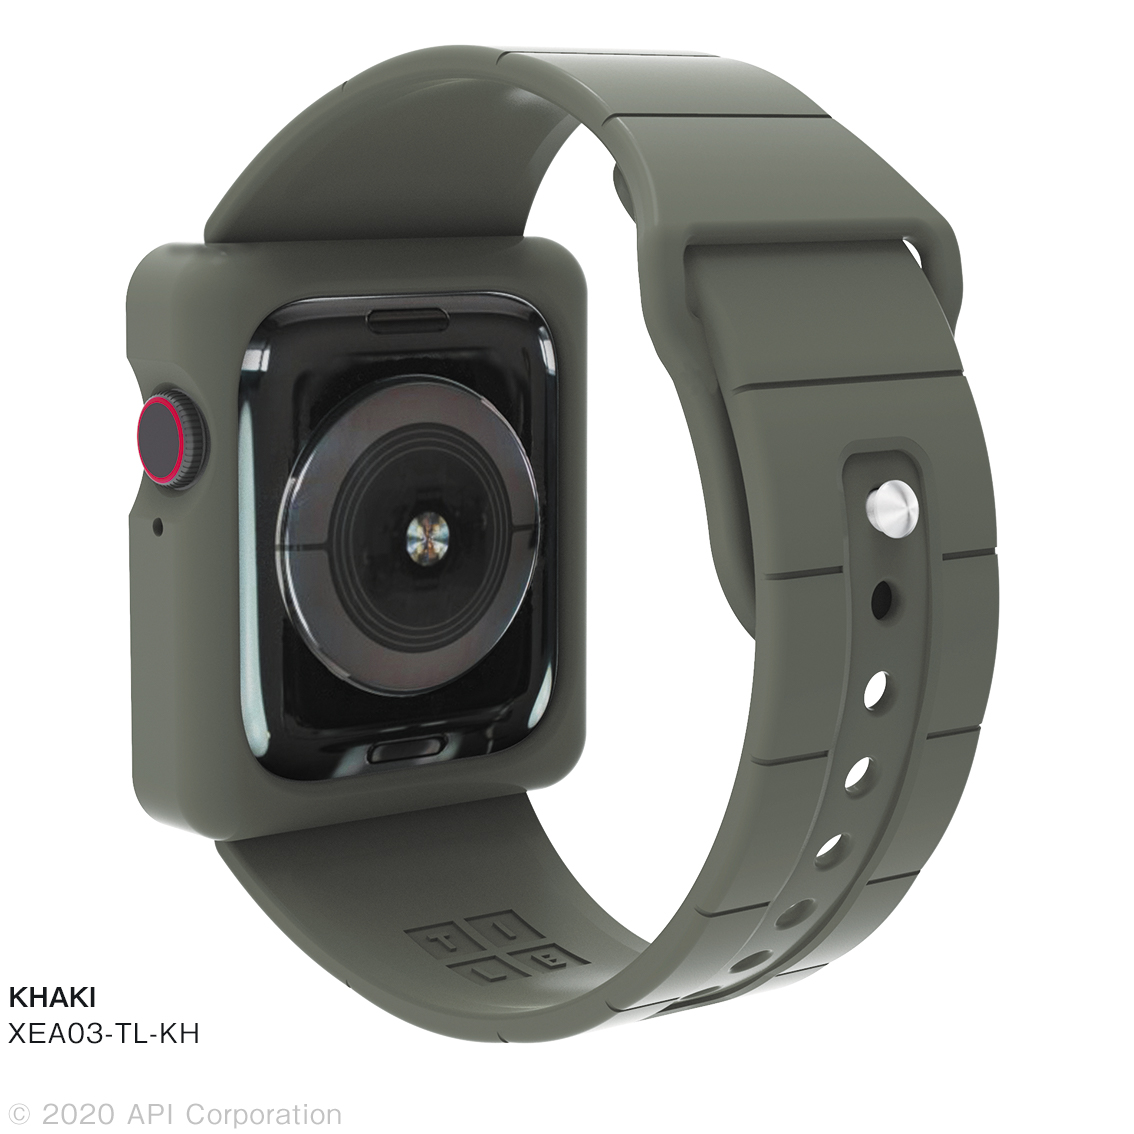 楽天市場 Apple Watch Series 6 5 4 Se ケース付きバンド 44mm 一体型バンド カラフル シンプル Tpu アップルウォッチ Crystal Armor ダイレクト